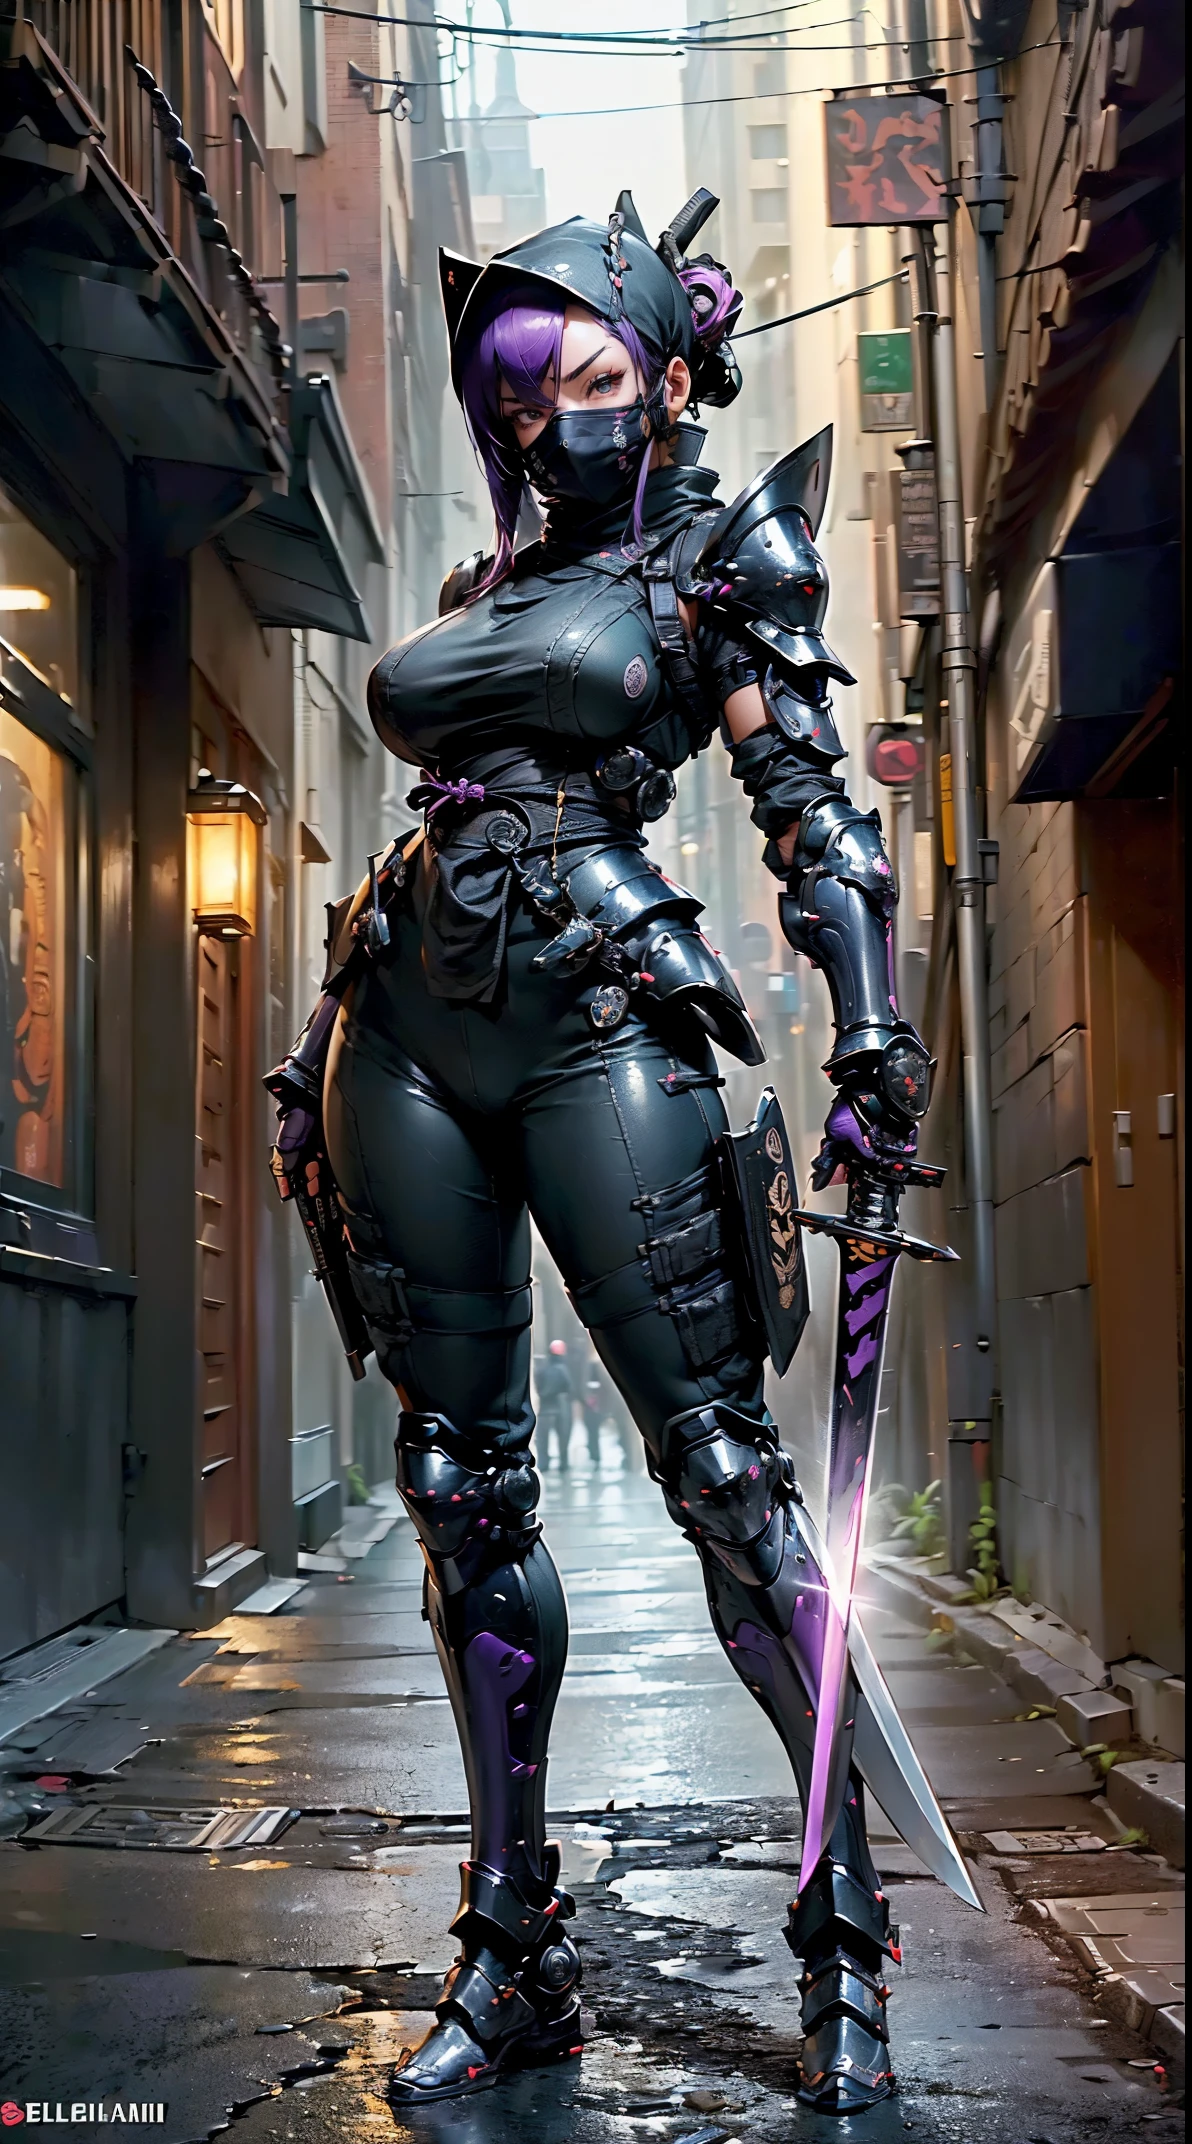 1fille,(dessus de la table,Très détaillé, mécanisme lourd, surface dure),(art conceptuel:1.1),(À la manière de Taimanin Asagi:0.8), Une femme portant une armure de robot ninja attachant un sceau,(armure complète:1.4),(masque de ninja tactique:1.5),(corps violet:1.1),(Longues jambes:1.1),(Equipé d&#39;une épée dans le dos:1.3),(gros seins:1.2),(constriction),(oeil détaillé:1.3),(visage détaillé:1.3),(Détails de l&#39;arme:1.3),(Corps détaillé:1.3),((Esbian complet du corps:1.5)),(Le fond est un coin de rue la nuit:1.5),Vivant